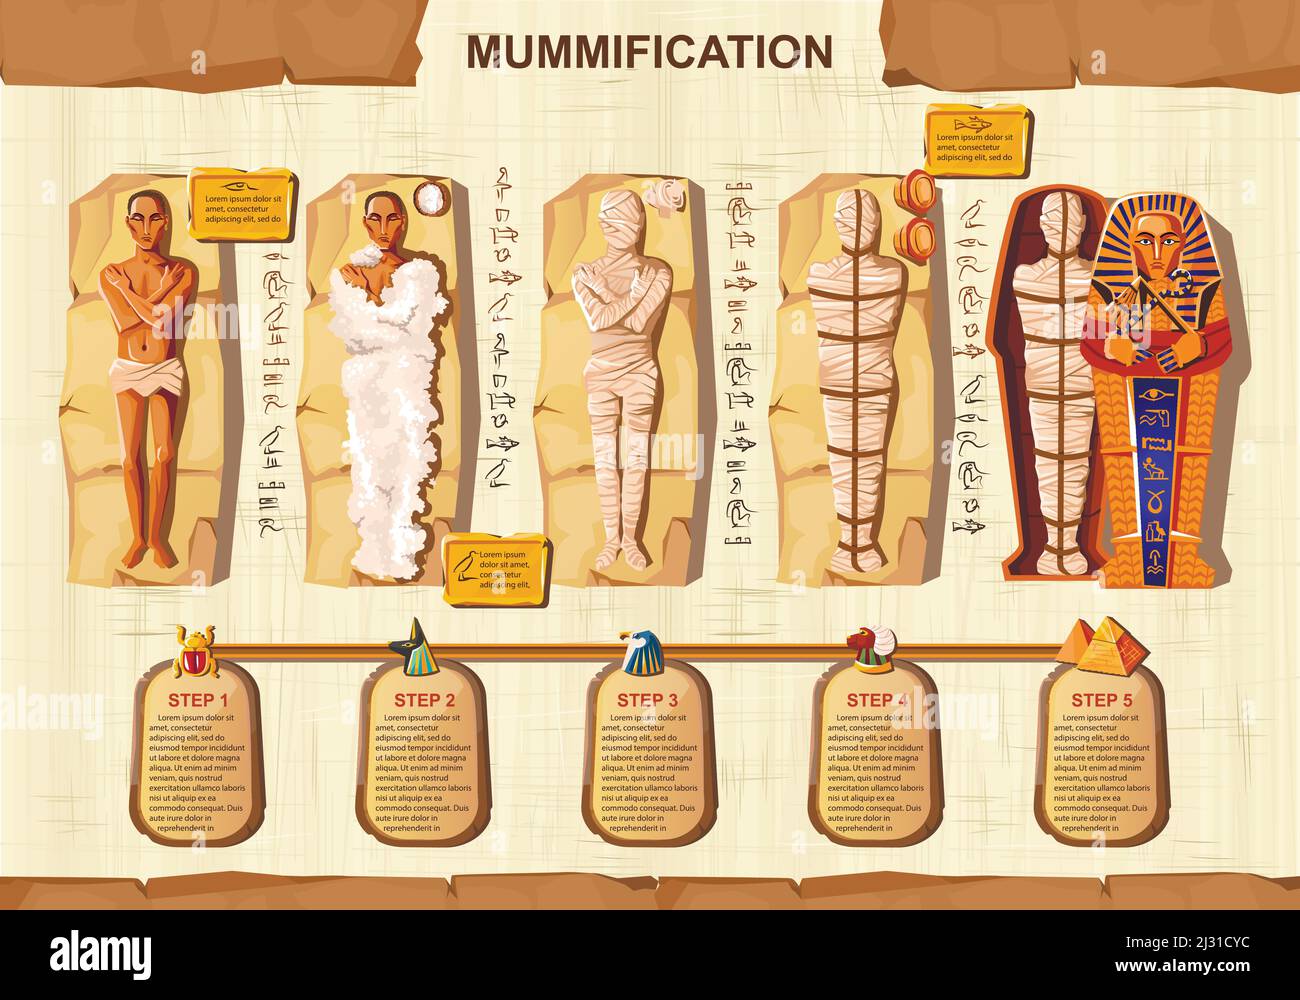 Mumie Schaffung Cartoon Vektor Infografik Illustration. Stufen der Mumifizierung Prozess, Einbalsamierung toten Körper, Umhüllung mit Tuch und Platzierung in sarco Stock Vektor